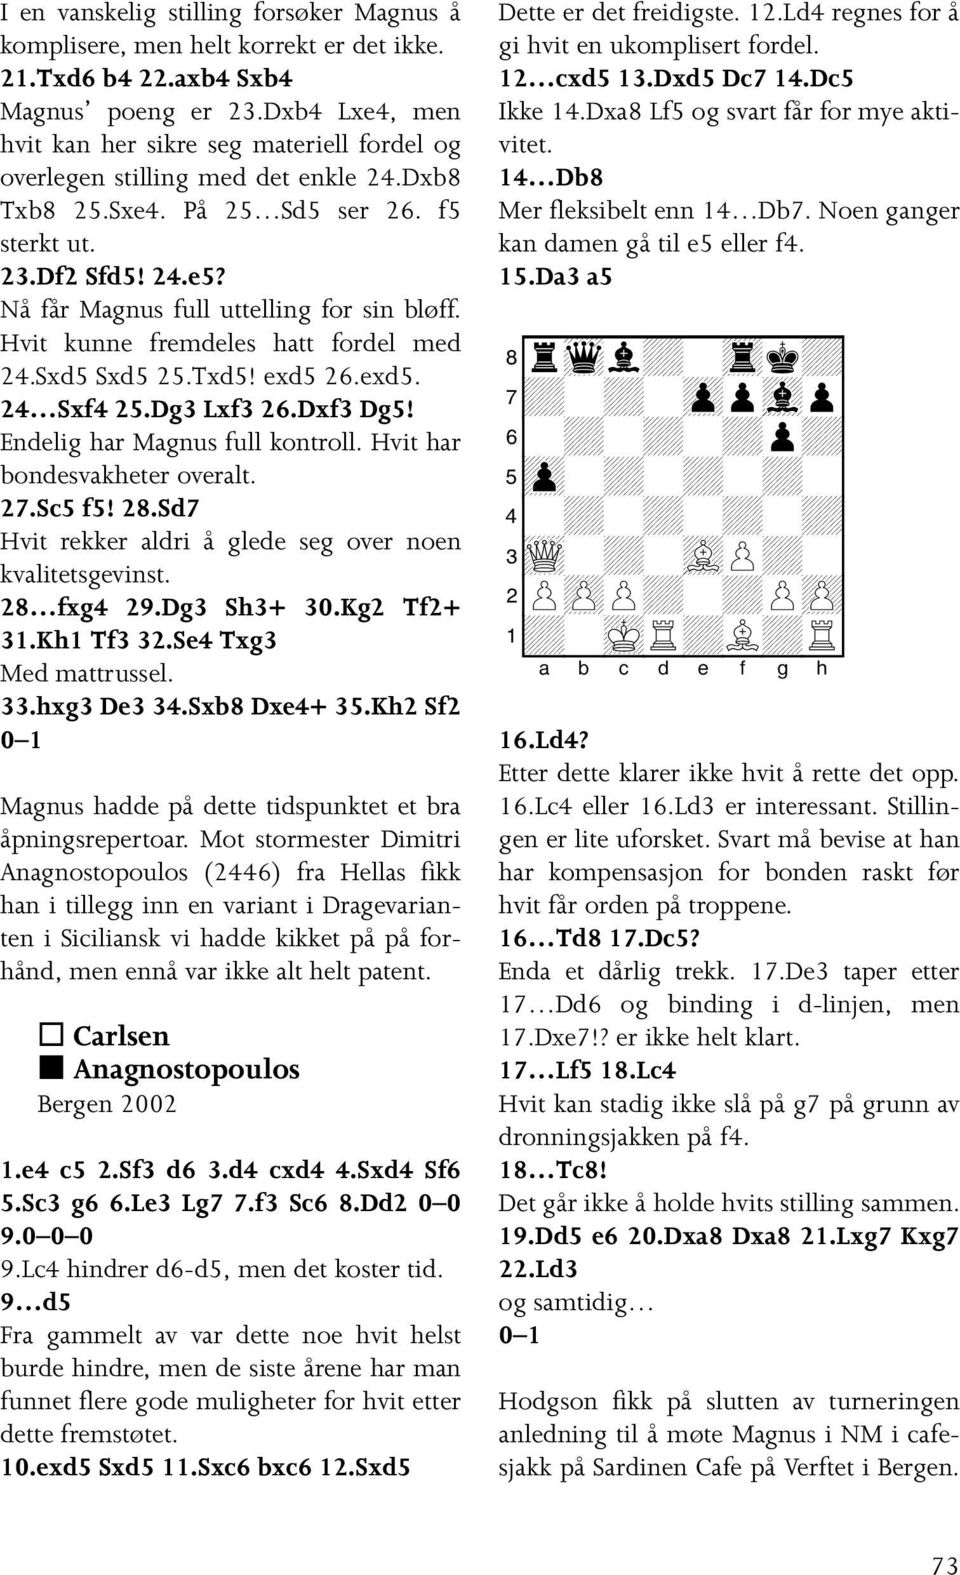 Nå får Magnus full uttelling for sin bløff. Hvit kunne fremdeles hatt fordel med 24.Sxd5 Sxd5 25.Txd5! exd5 26.exd5. 24 Sxf4 25.Dg3 Lxf3 26.Dxf3 Dg5! Endelig har Magnus full kontroll.